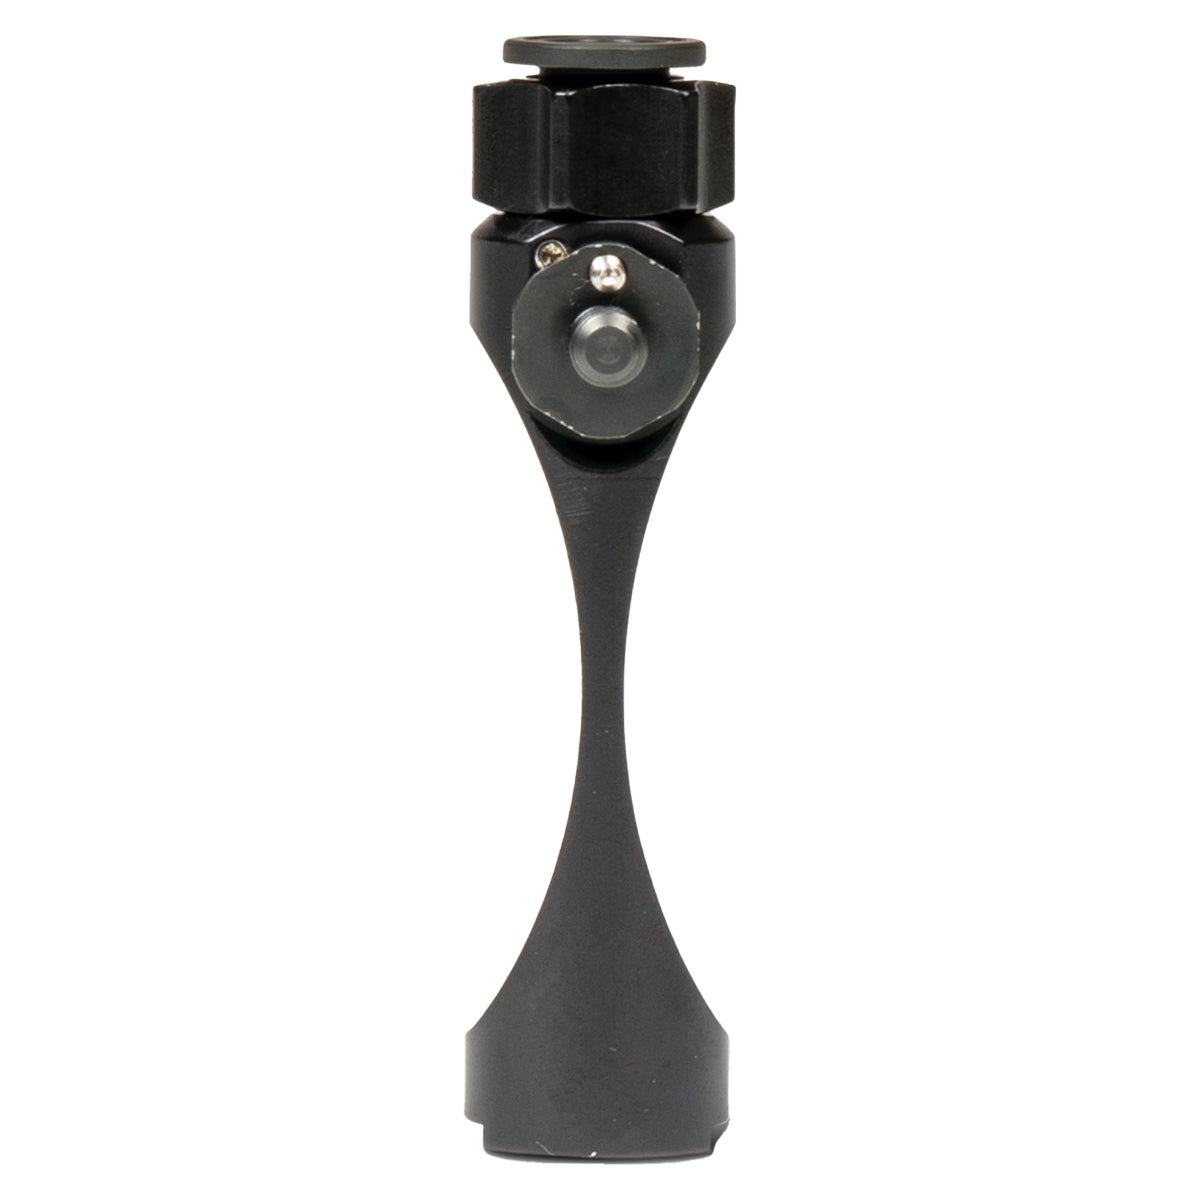 MUTNT Gear Gen 2 Binocular Tripod Adapter Kit in  by GOHUNT | MUTNT - GOHUNT Shop